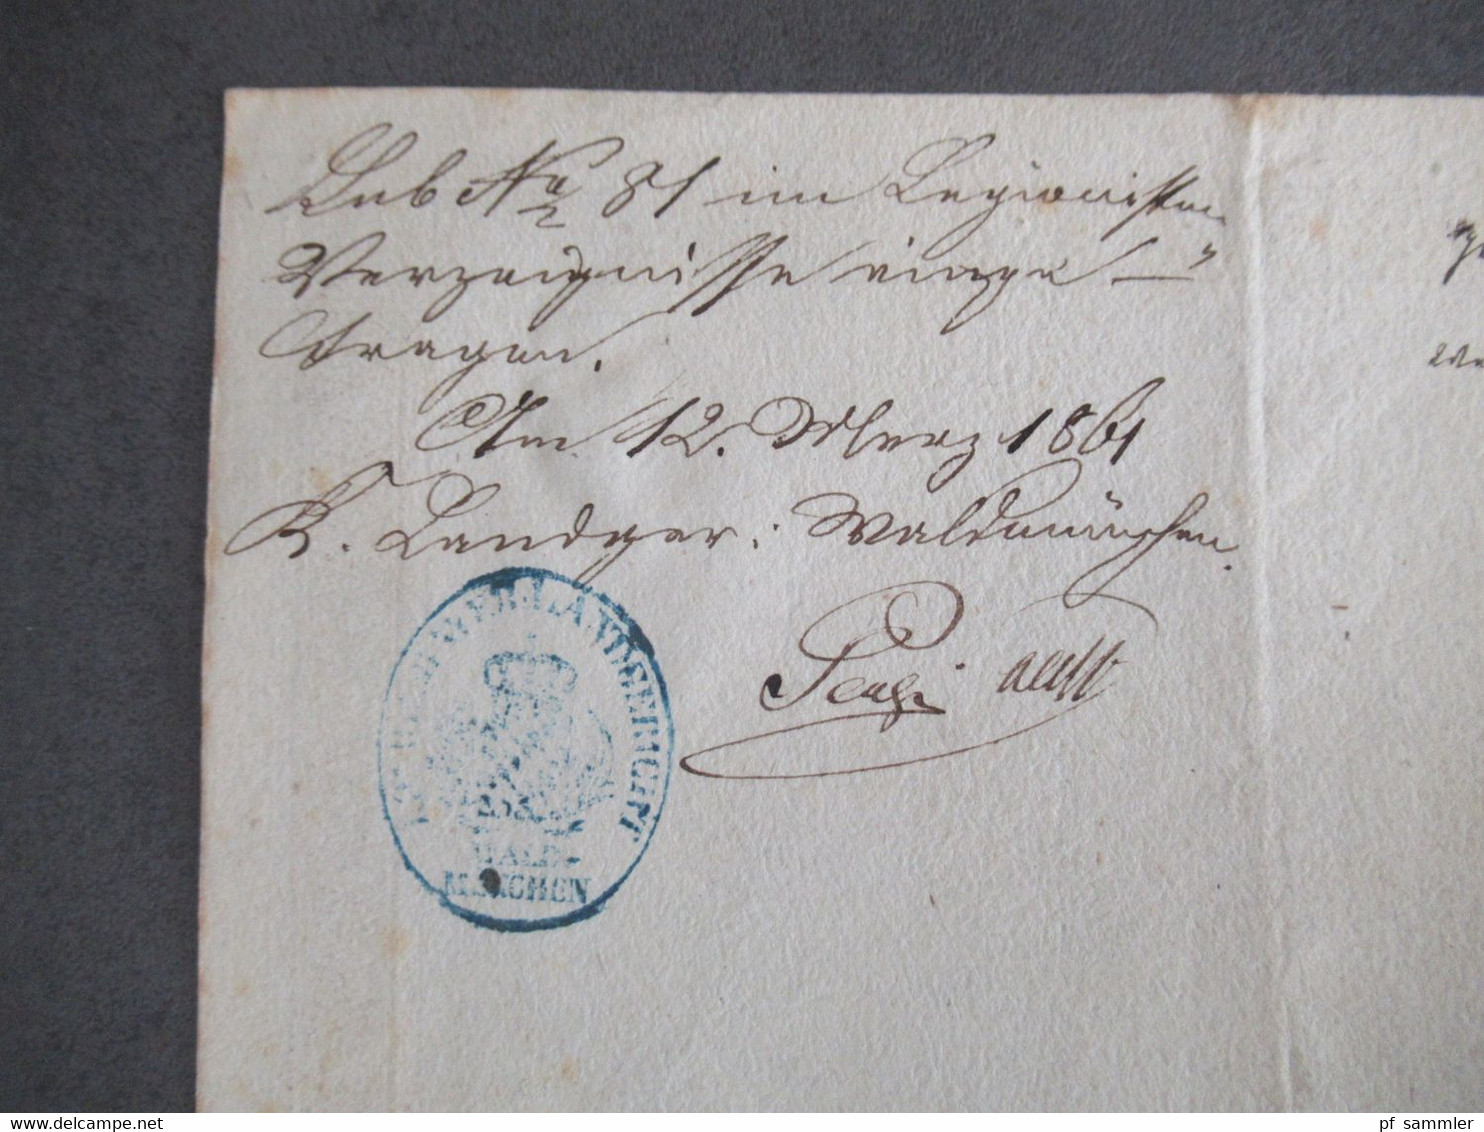 Urkunde Abschied Königlich Bayerische Armee aus dem Jahre 1861 (geboren 1833) Regensburg 11. Infanterie Regiment